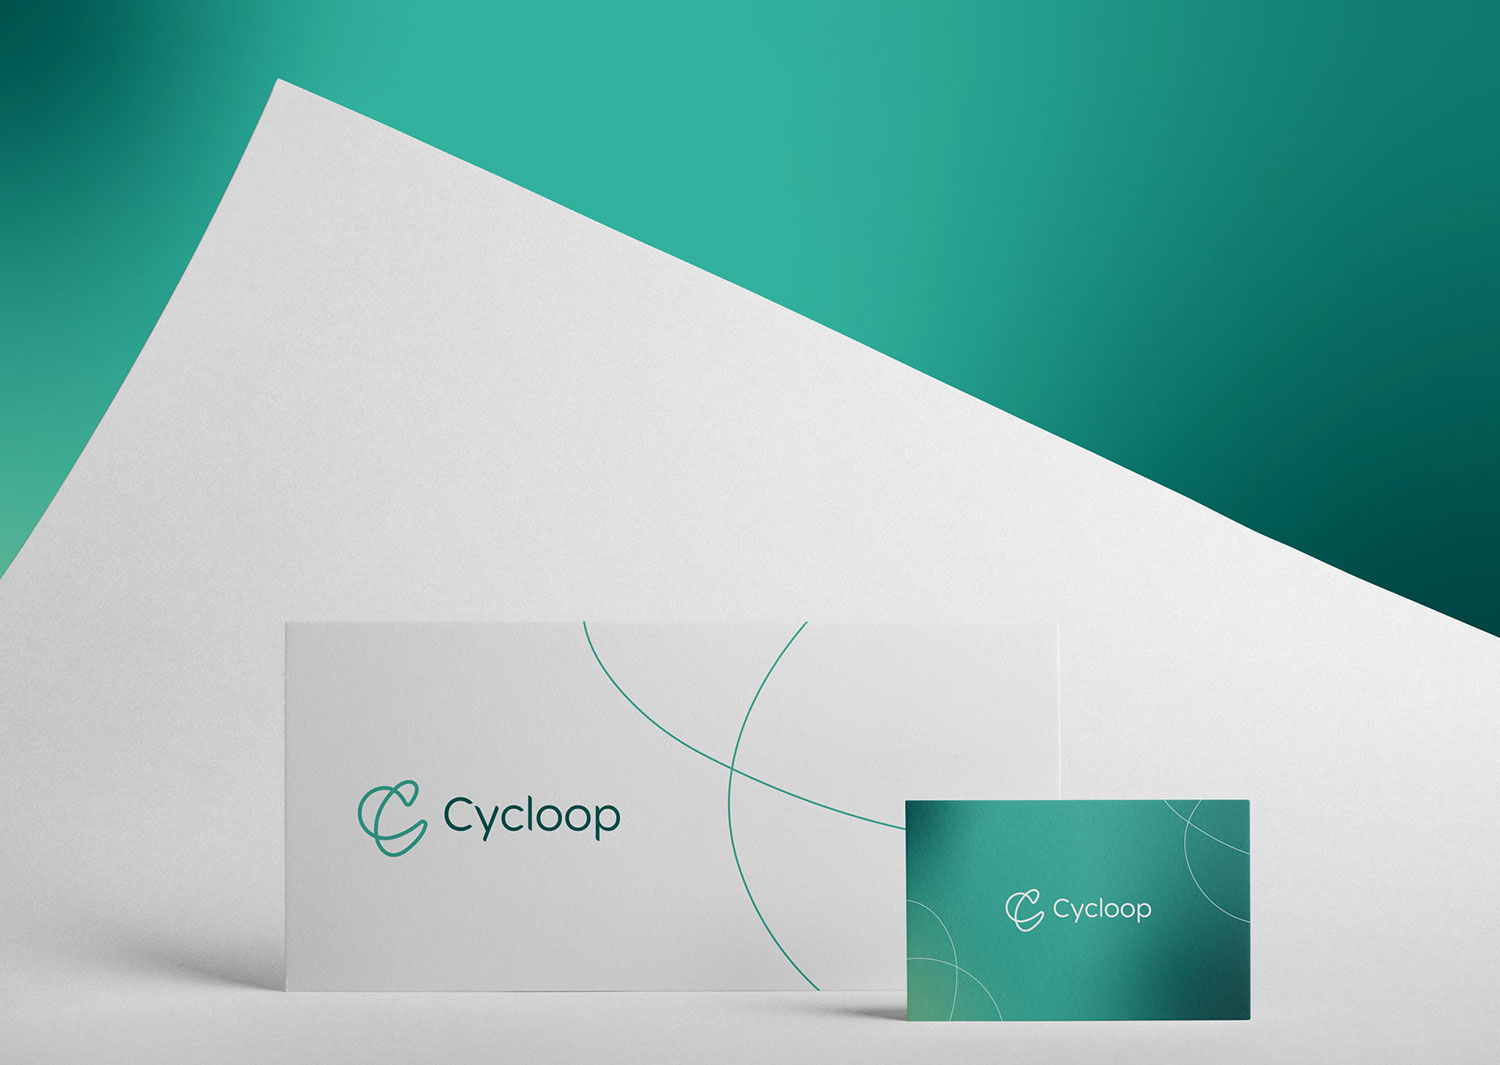 Logo e brand identity di Cycloop realizzato da SEBA! grafico di Gravellona Toce nel VCO della carta intestata, della busta da lettere e del biglietto da visita verde